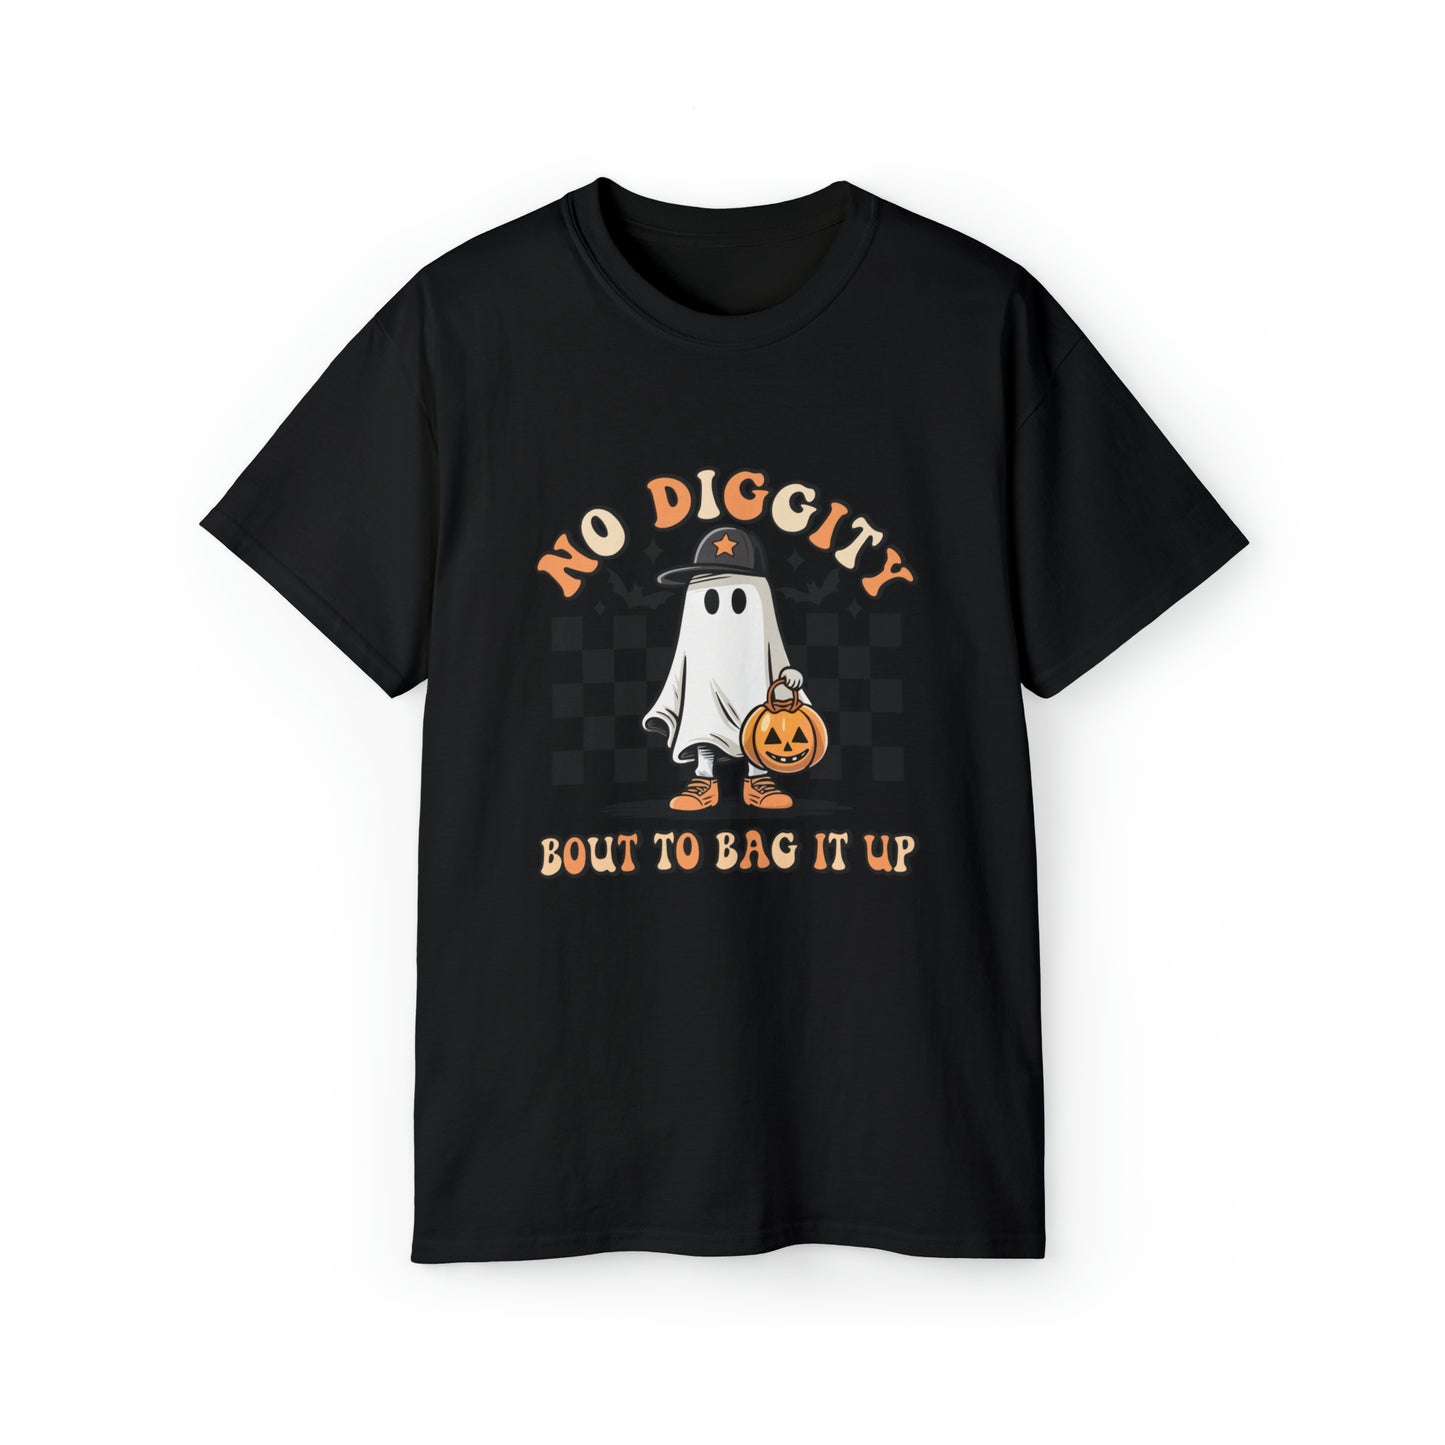 “No Diggity, Gotta Bag It Up” T-Shirt